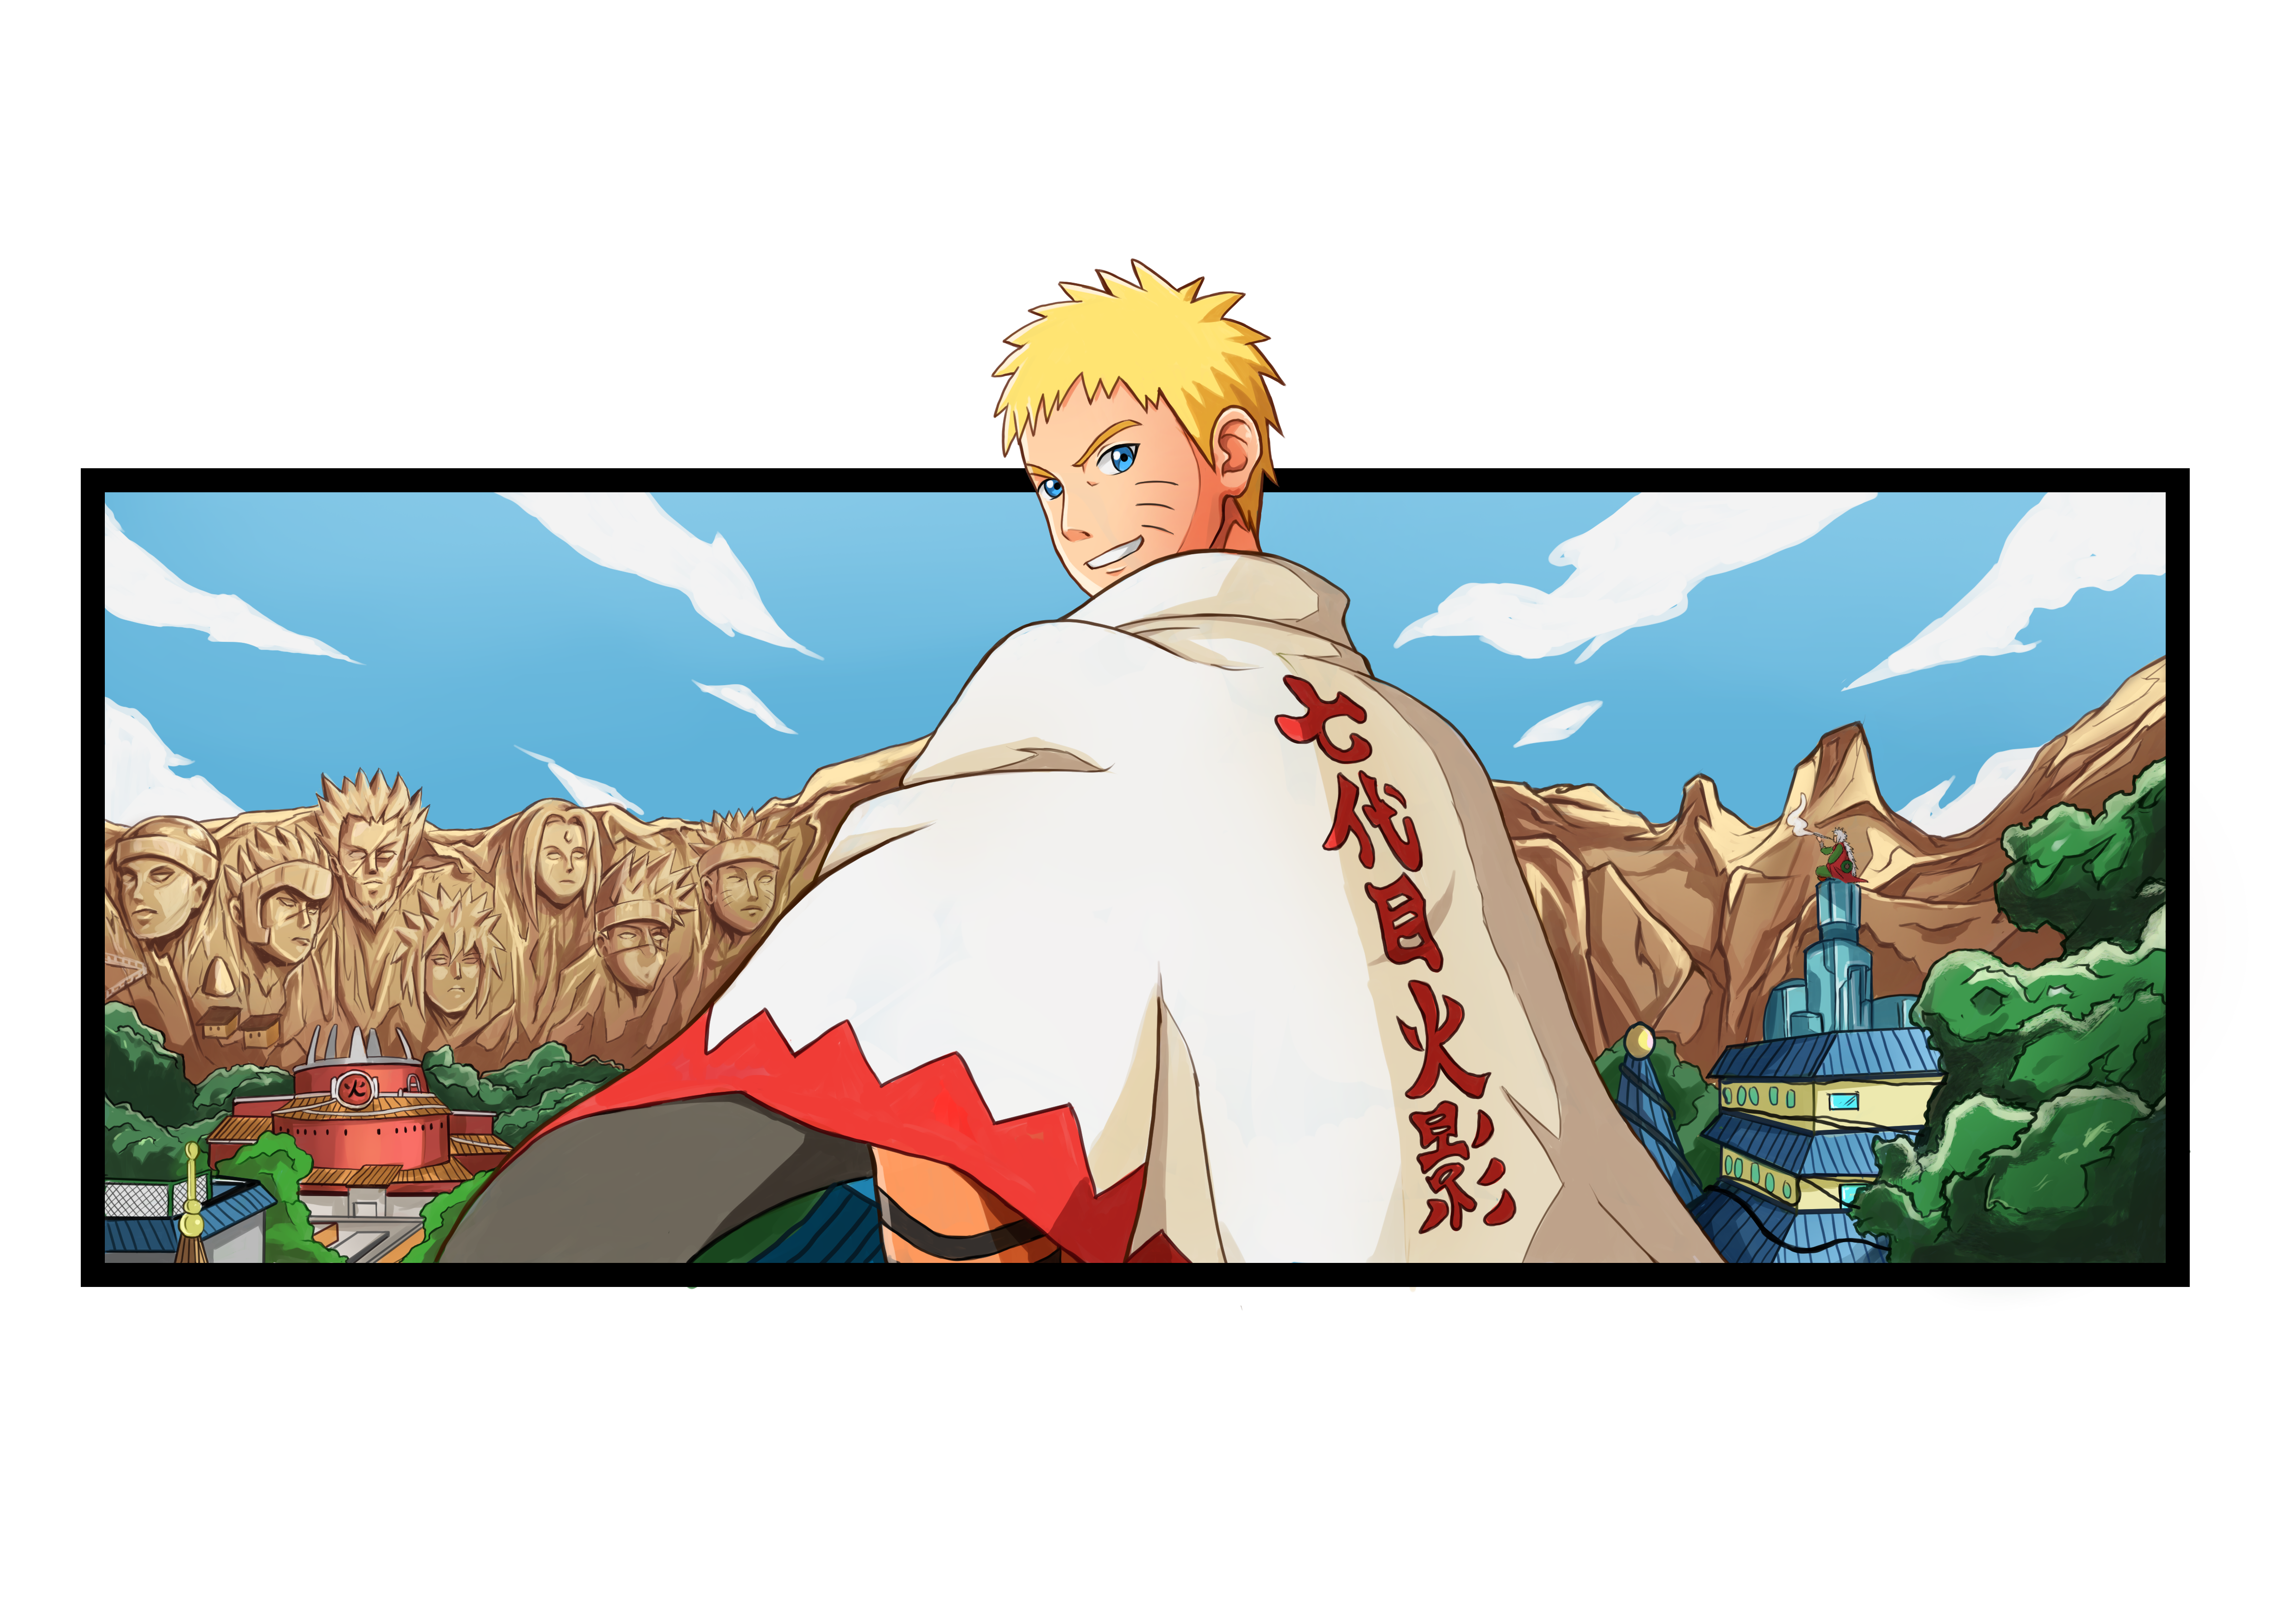 Naruto fragte nun Kakashi, ob er ihn trainieren würde, aber dieser lehnte ab und sagte Ebisu würde trainieren. Naruto soll nun an den heißen Quellen lernen, wie man über Wasser geht. Ebisu ertappte Jiraiya dabei, wie er Frauen beim Baden zuschaute, und griff ihn deswegen an. Jiraiya wehrte Ebisus Angriff mit Leichtigkeit ab, indem er mit Kuchiyose no Jutsu eine Kröte beschwor, die Ebisu an den Beinen griff und ihn auf den Boden schlug.